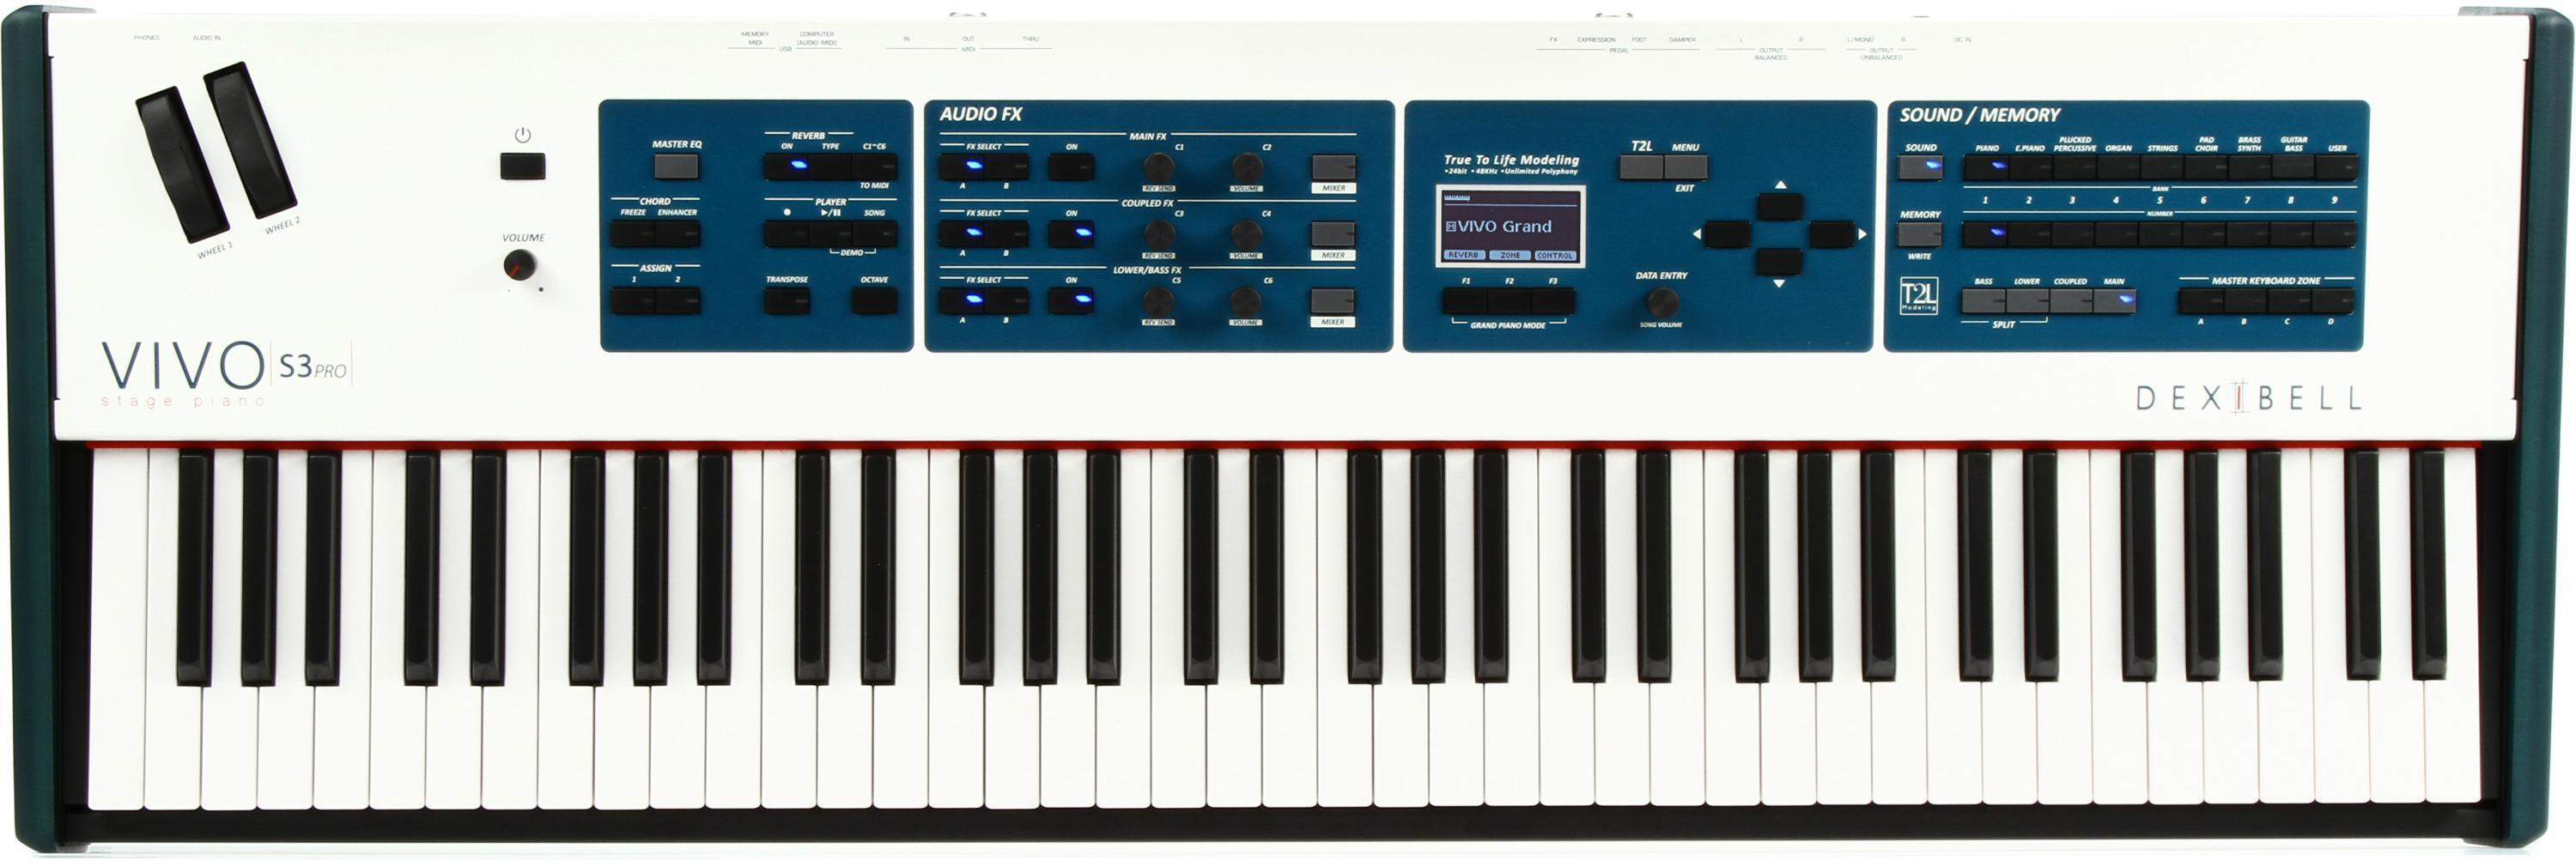 Dexibell VIVO S3 Pro 73-key Digital Piano | Sweetwater